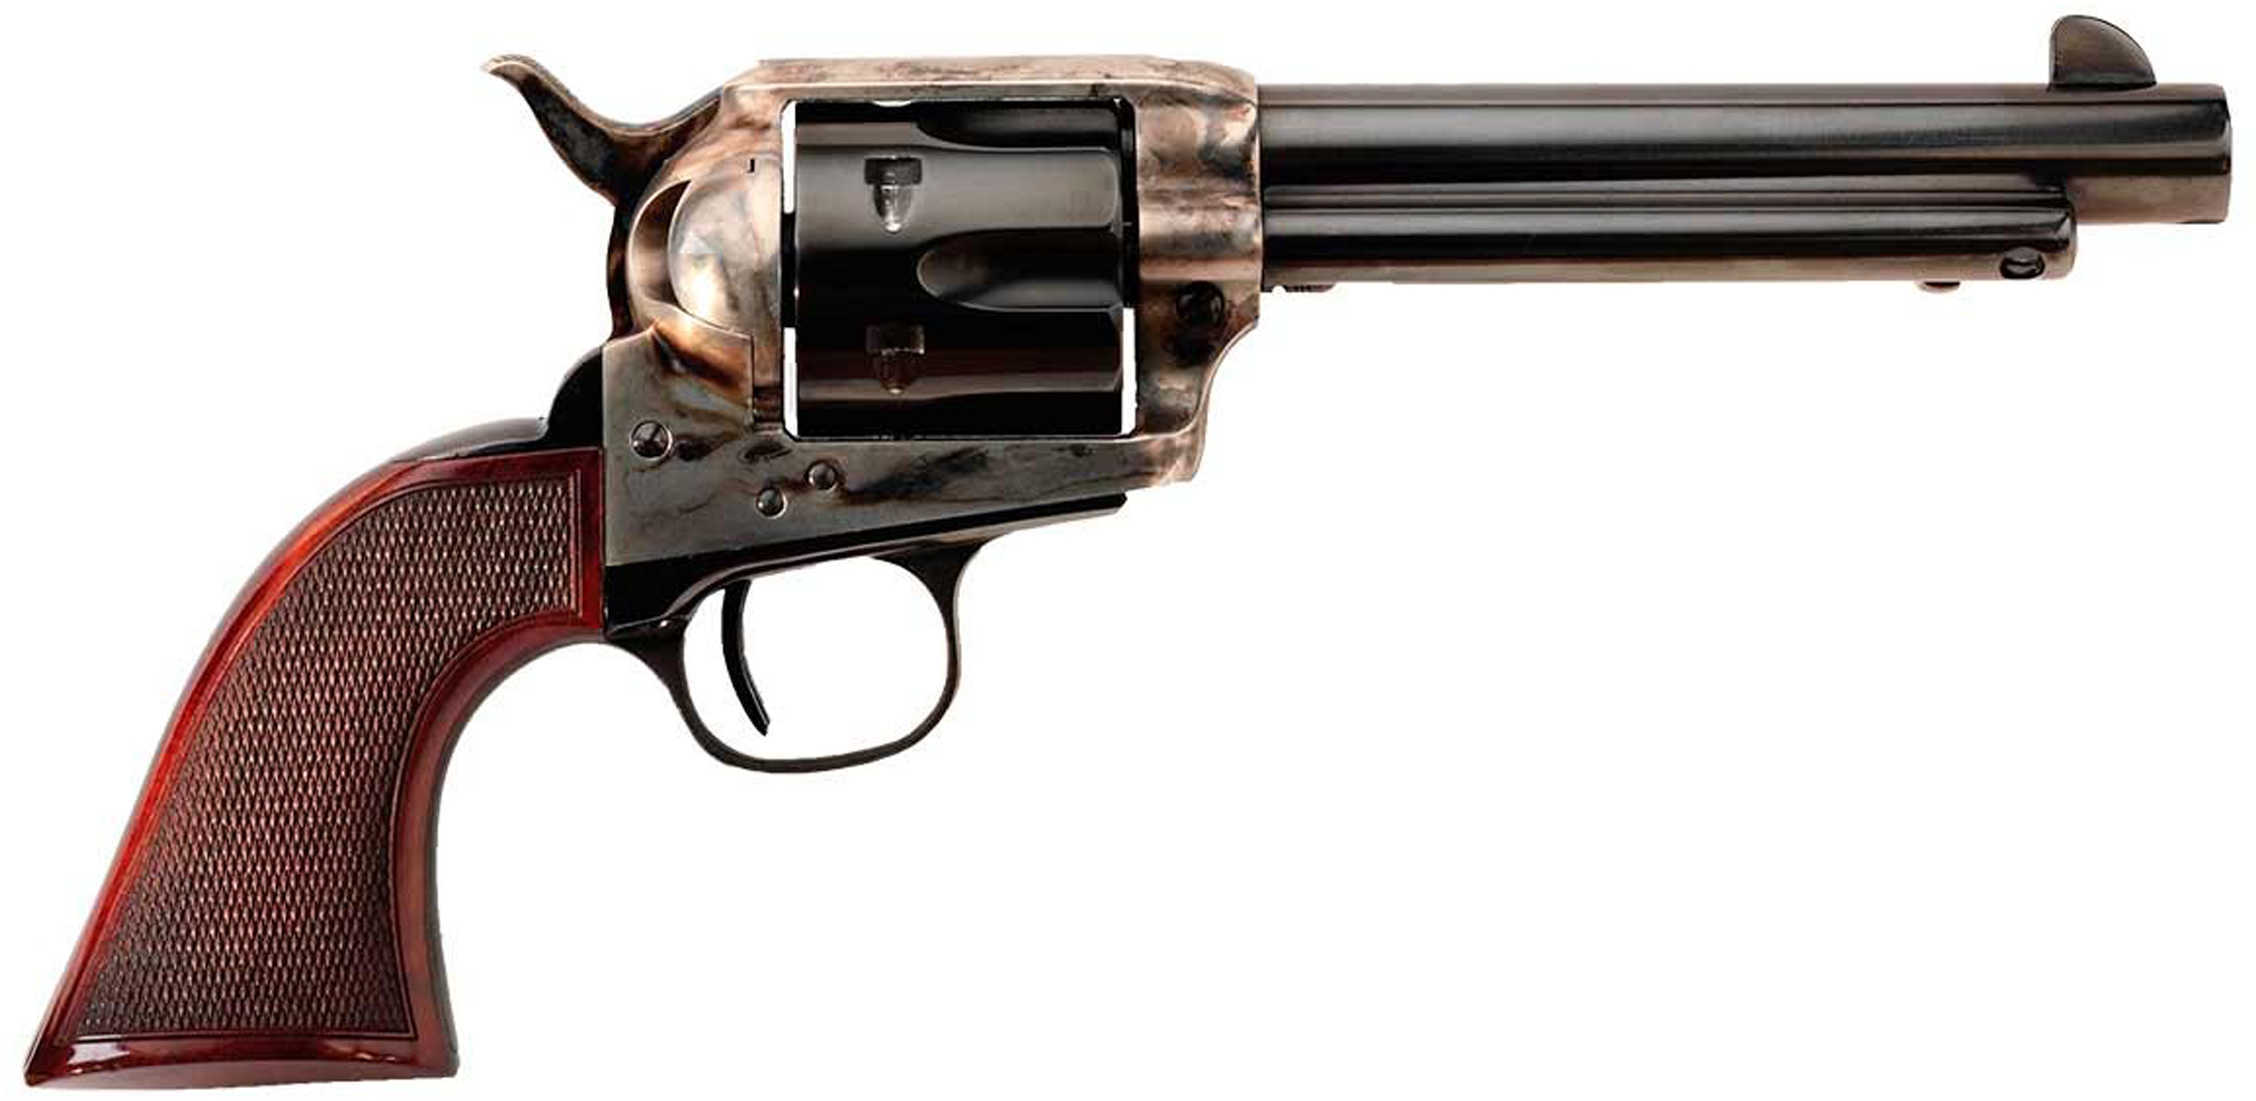 Revolver Taylor's & Company Smoke Wagon 357 Magnum 5.5" Barrel Deluxe Edition 4108DE